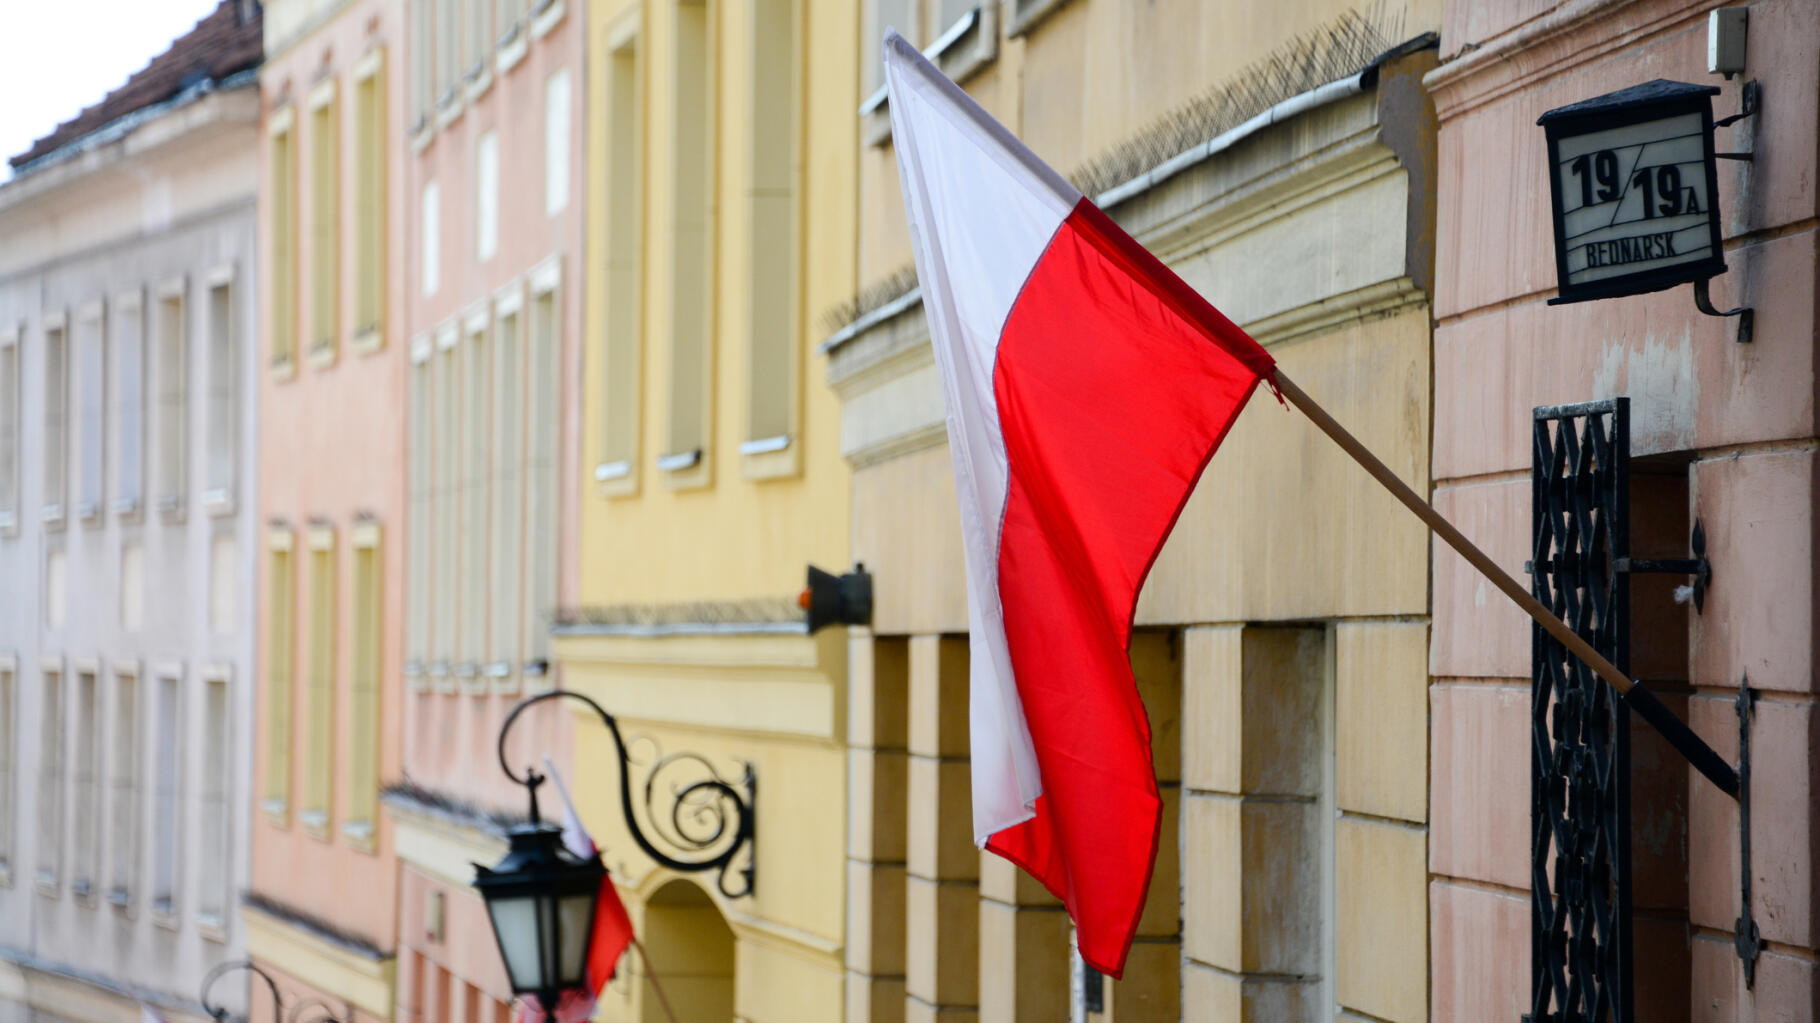 Oburzenie w Polsce po uwolnieniu przez ministra sprawiedliwości młodego neonazistowskiego działacza skazanego na 3 lata więzienia